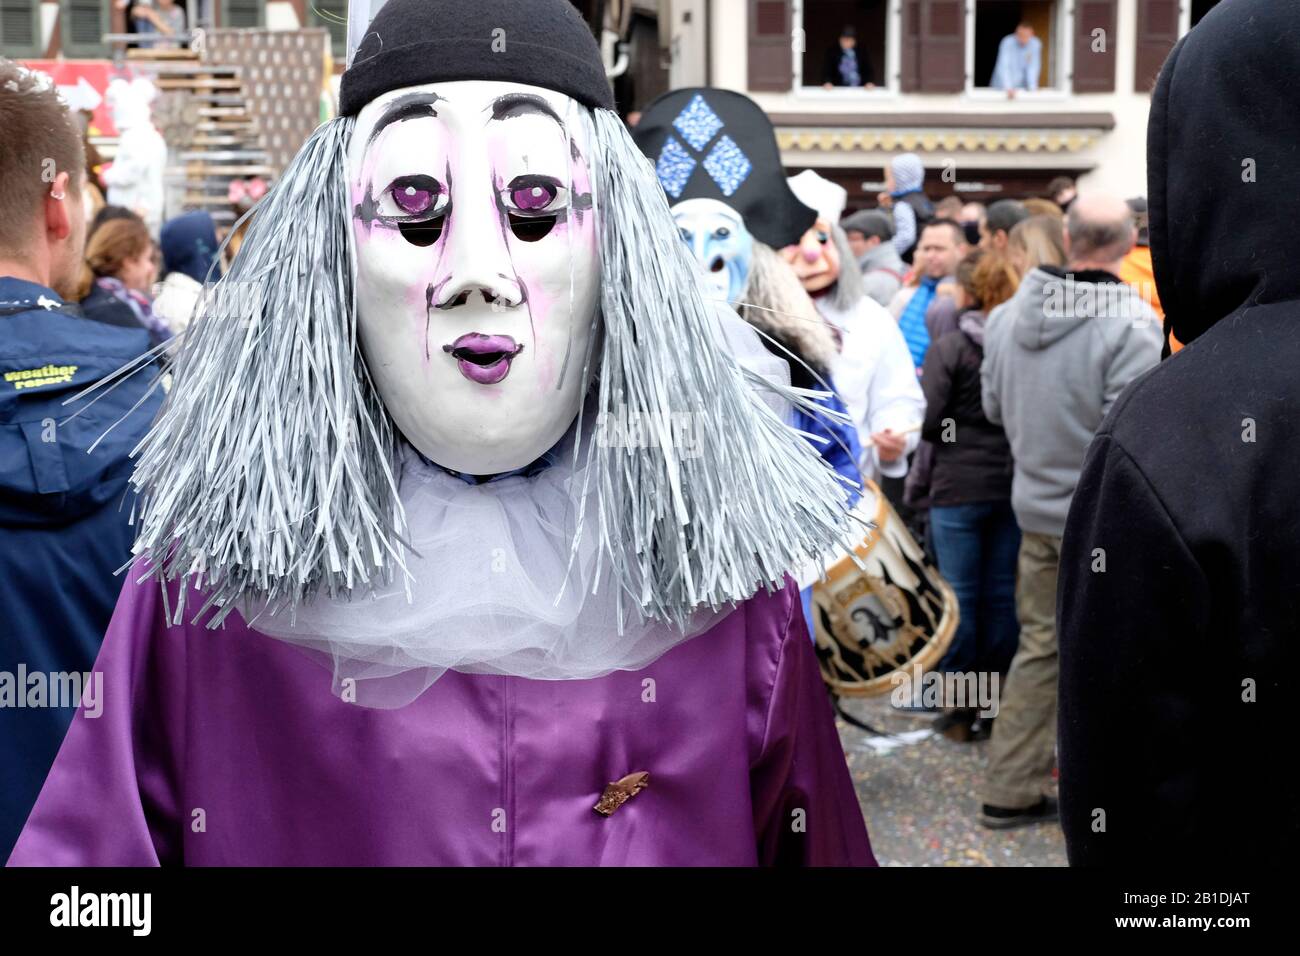 En Basel fasnacht (carnaval), los participantes esconden su verdadera identidad bajo una máscara. Foto de stock